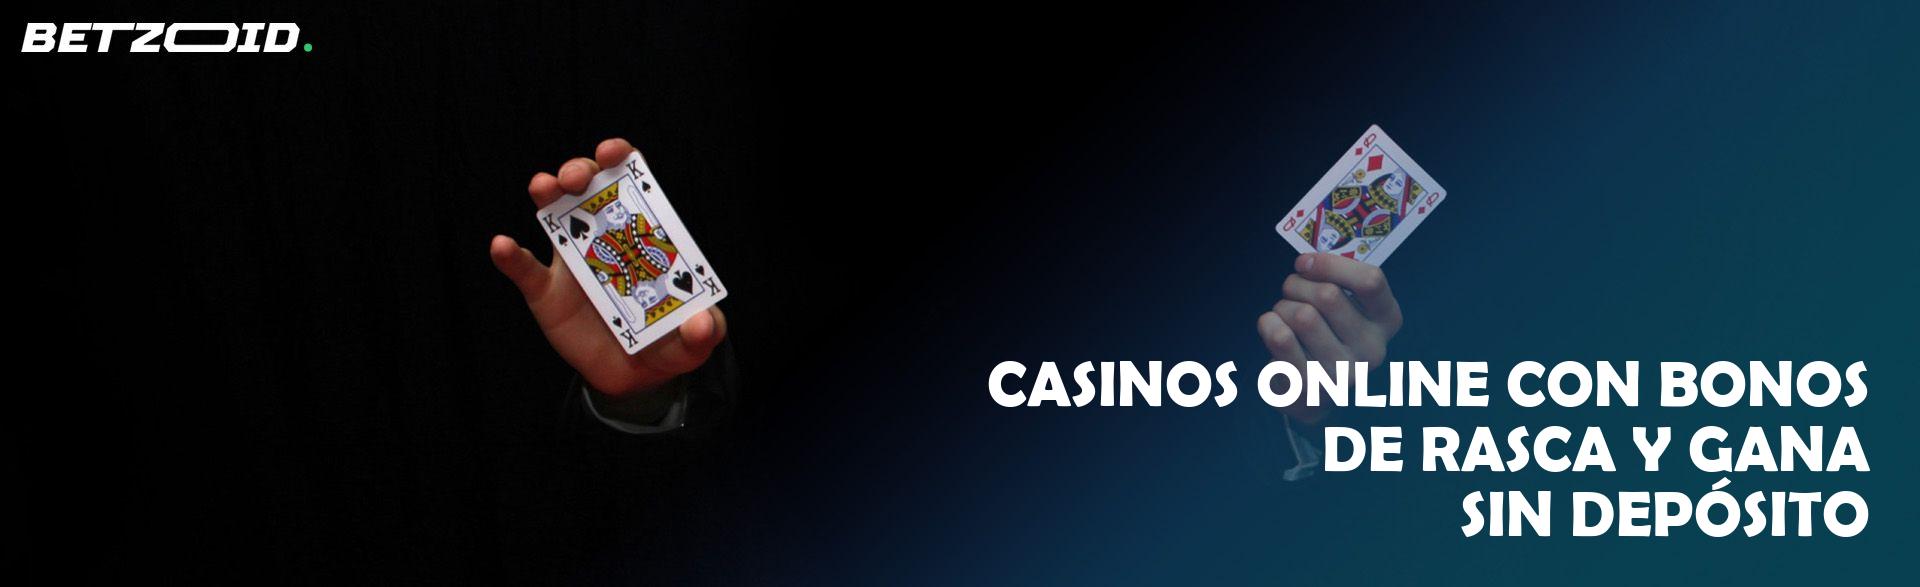 Premios instantáneos en casinos online